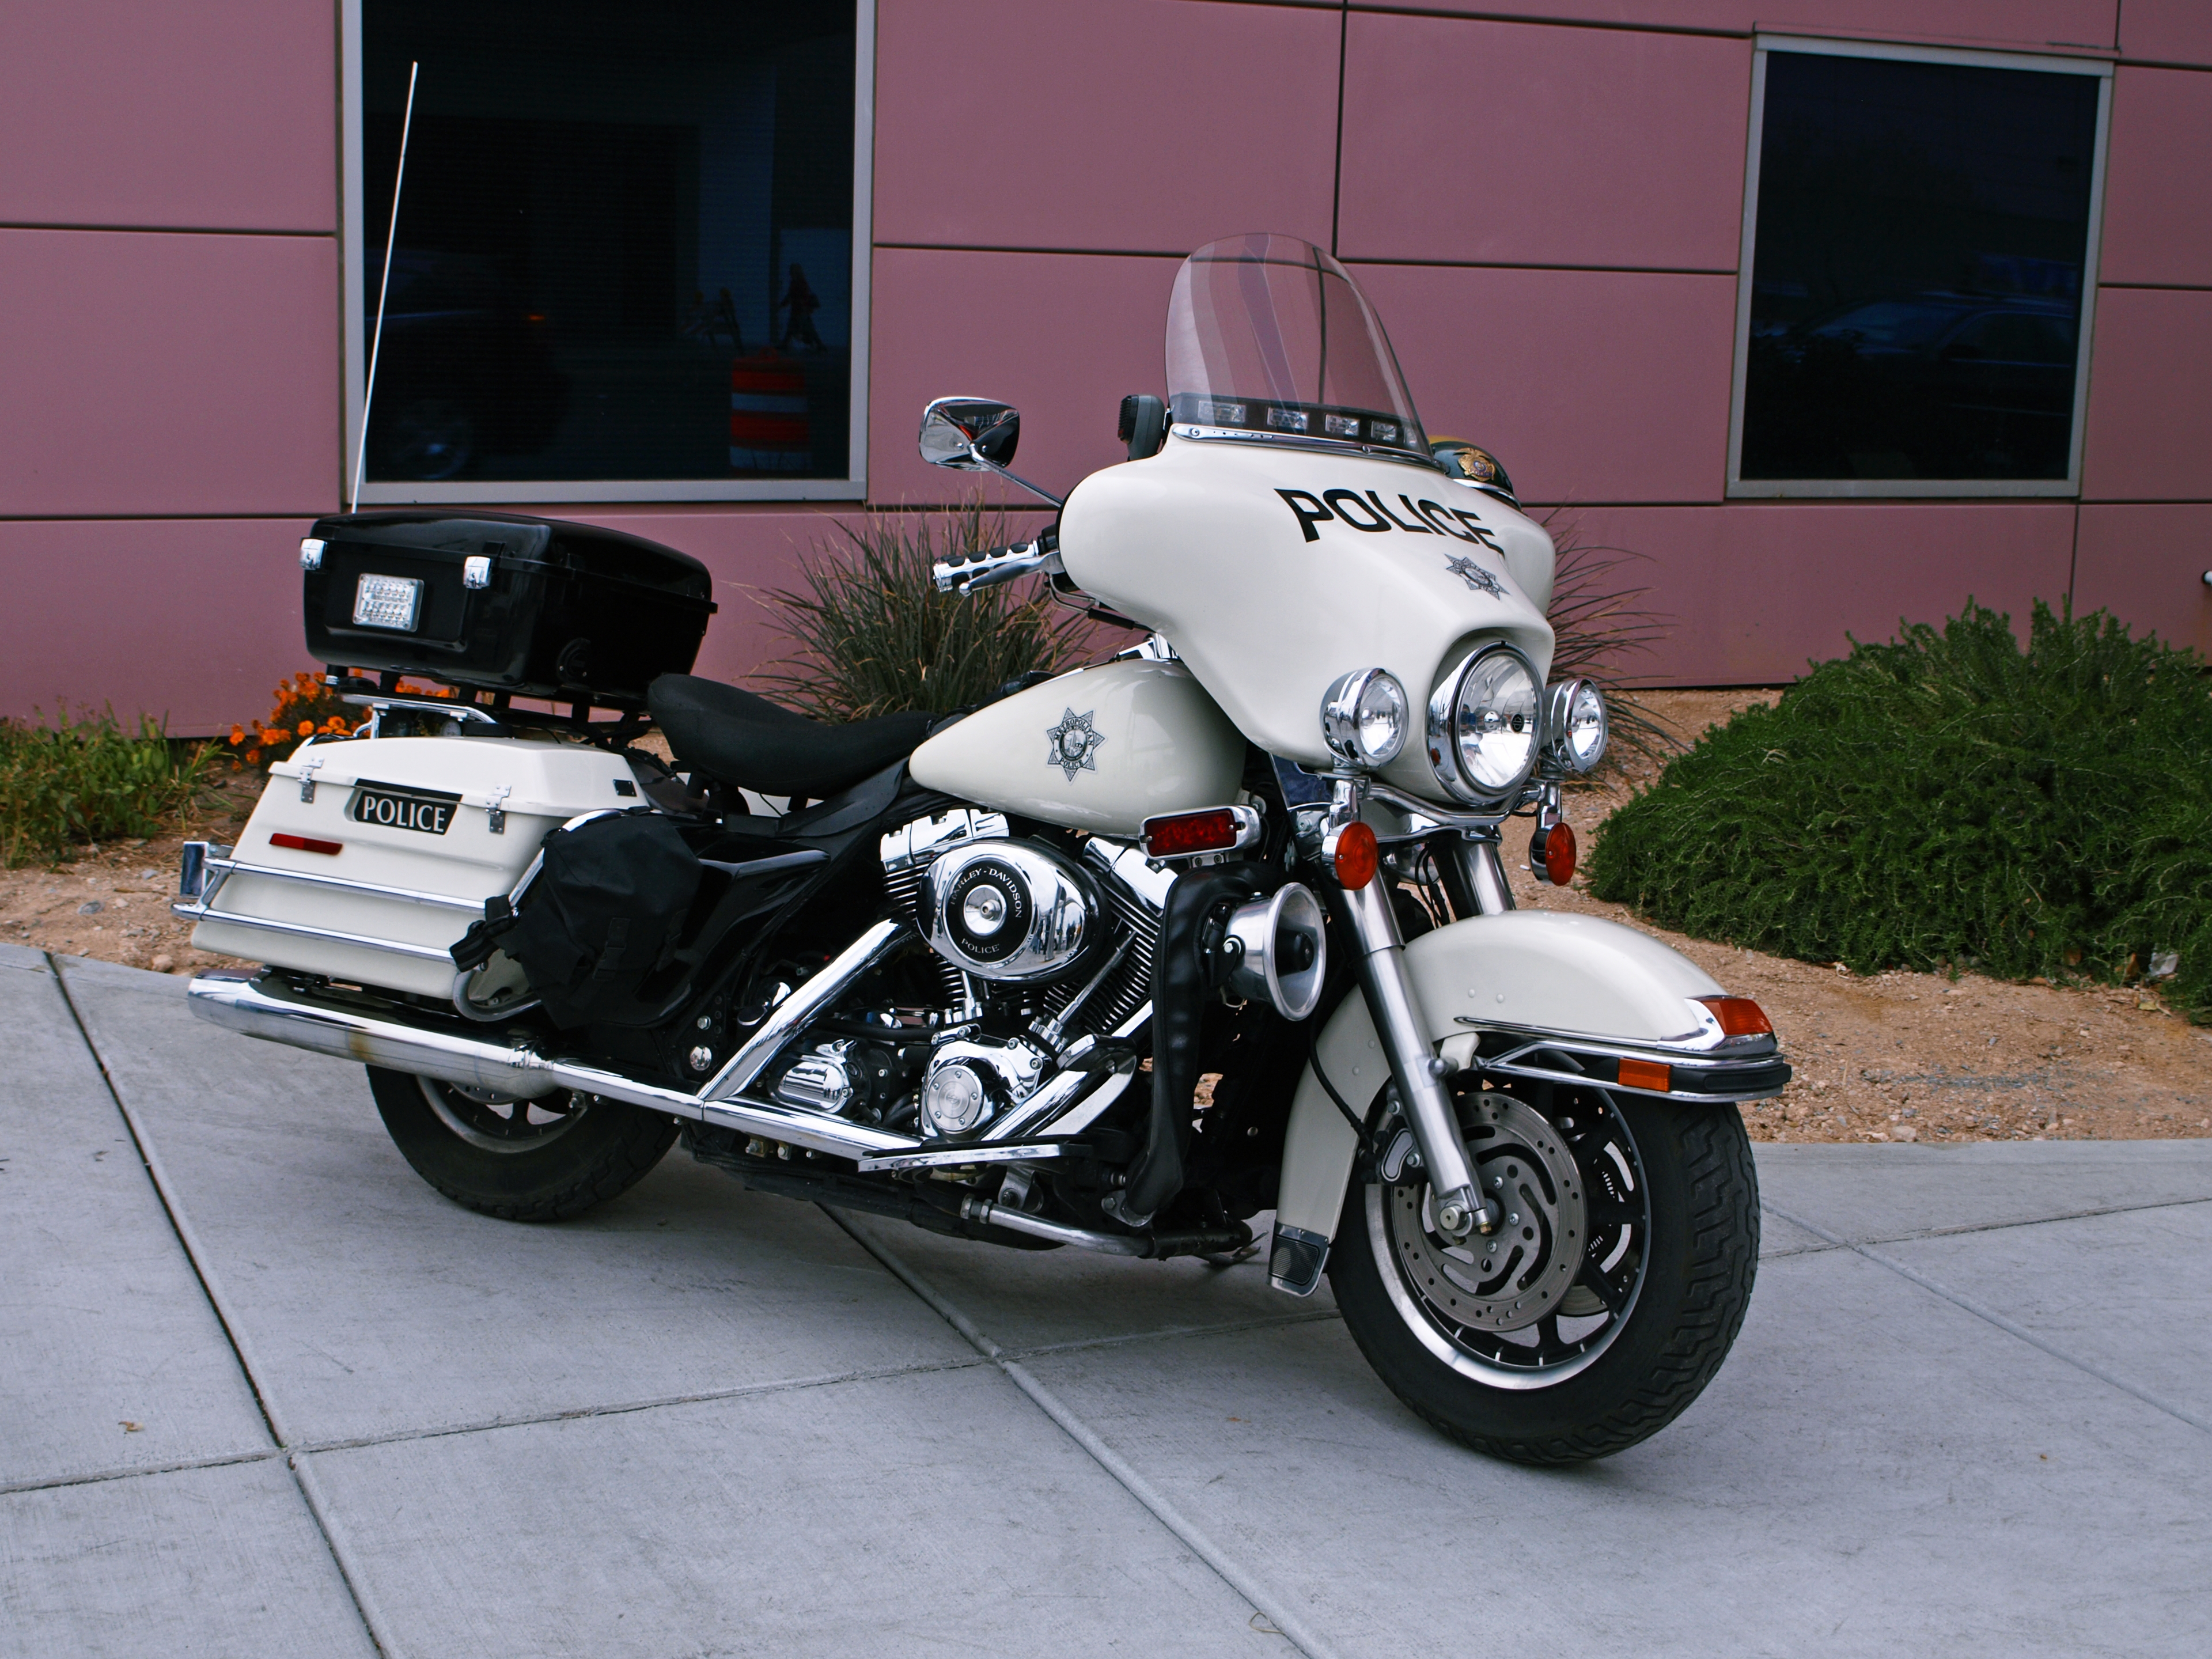 Télécharger des fonds d'écran Police Harley Davidson HD